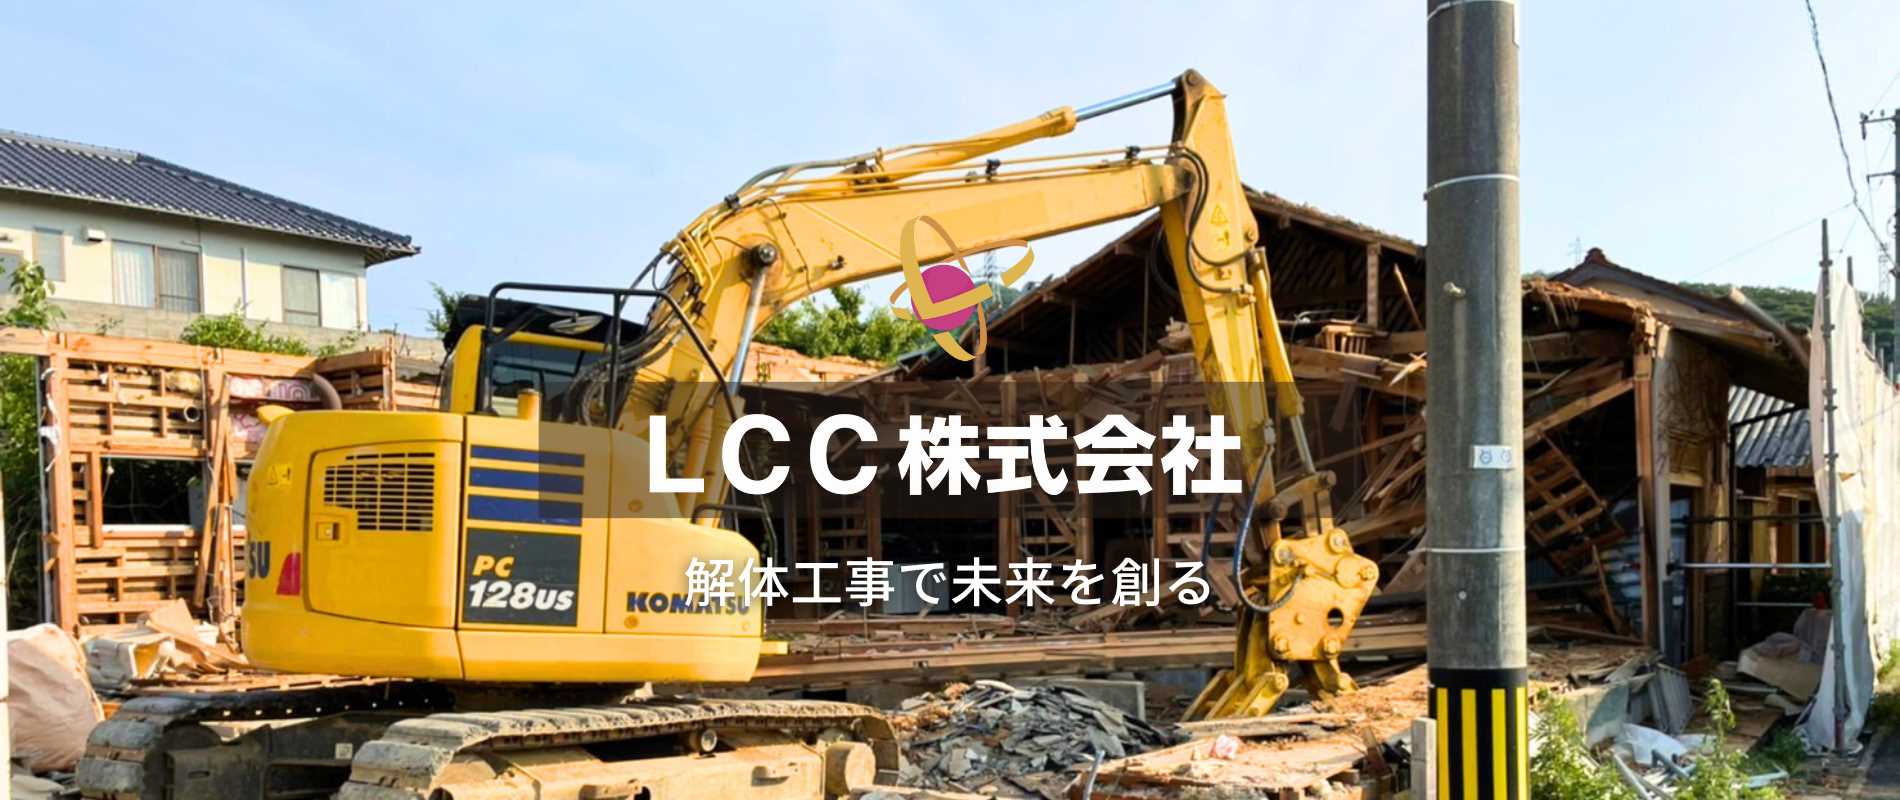 LCC株式会社 - 出雲市・松江市の解体工事、不用品処分、遺品整理